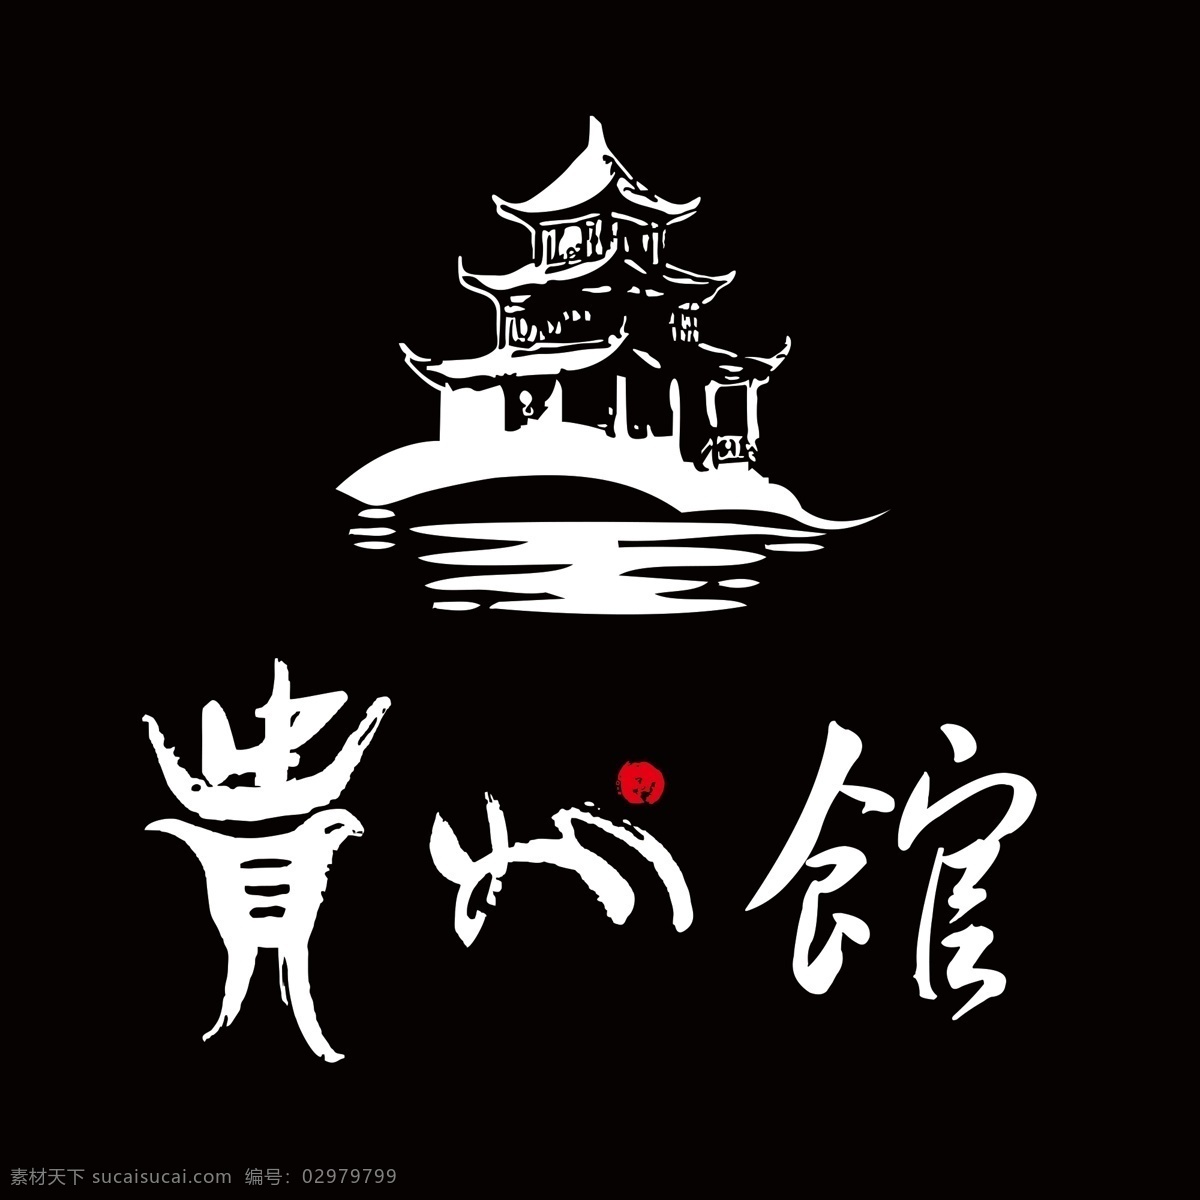 特色 中国 特产 馆 贵州 贵州馆 贵州特产馆 贵州特色馆 标志图标 企业 logo 标志